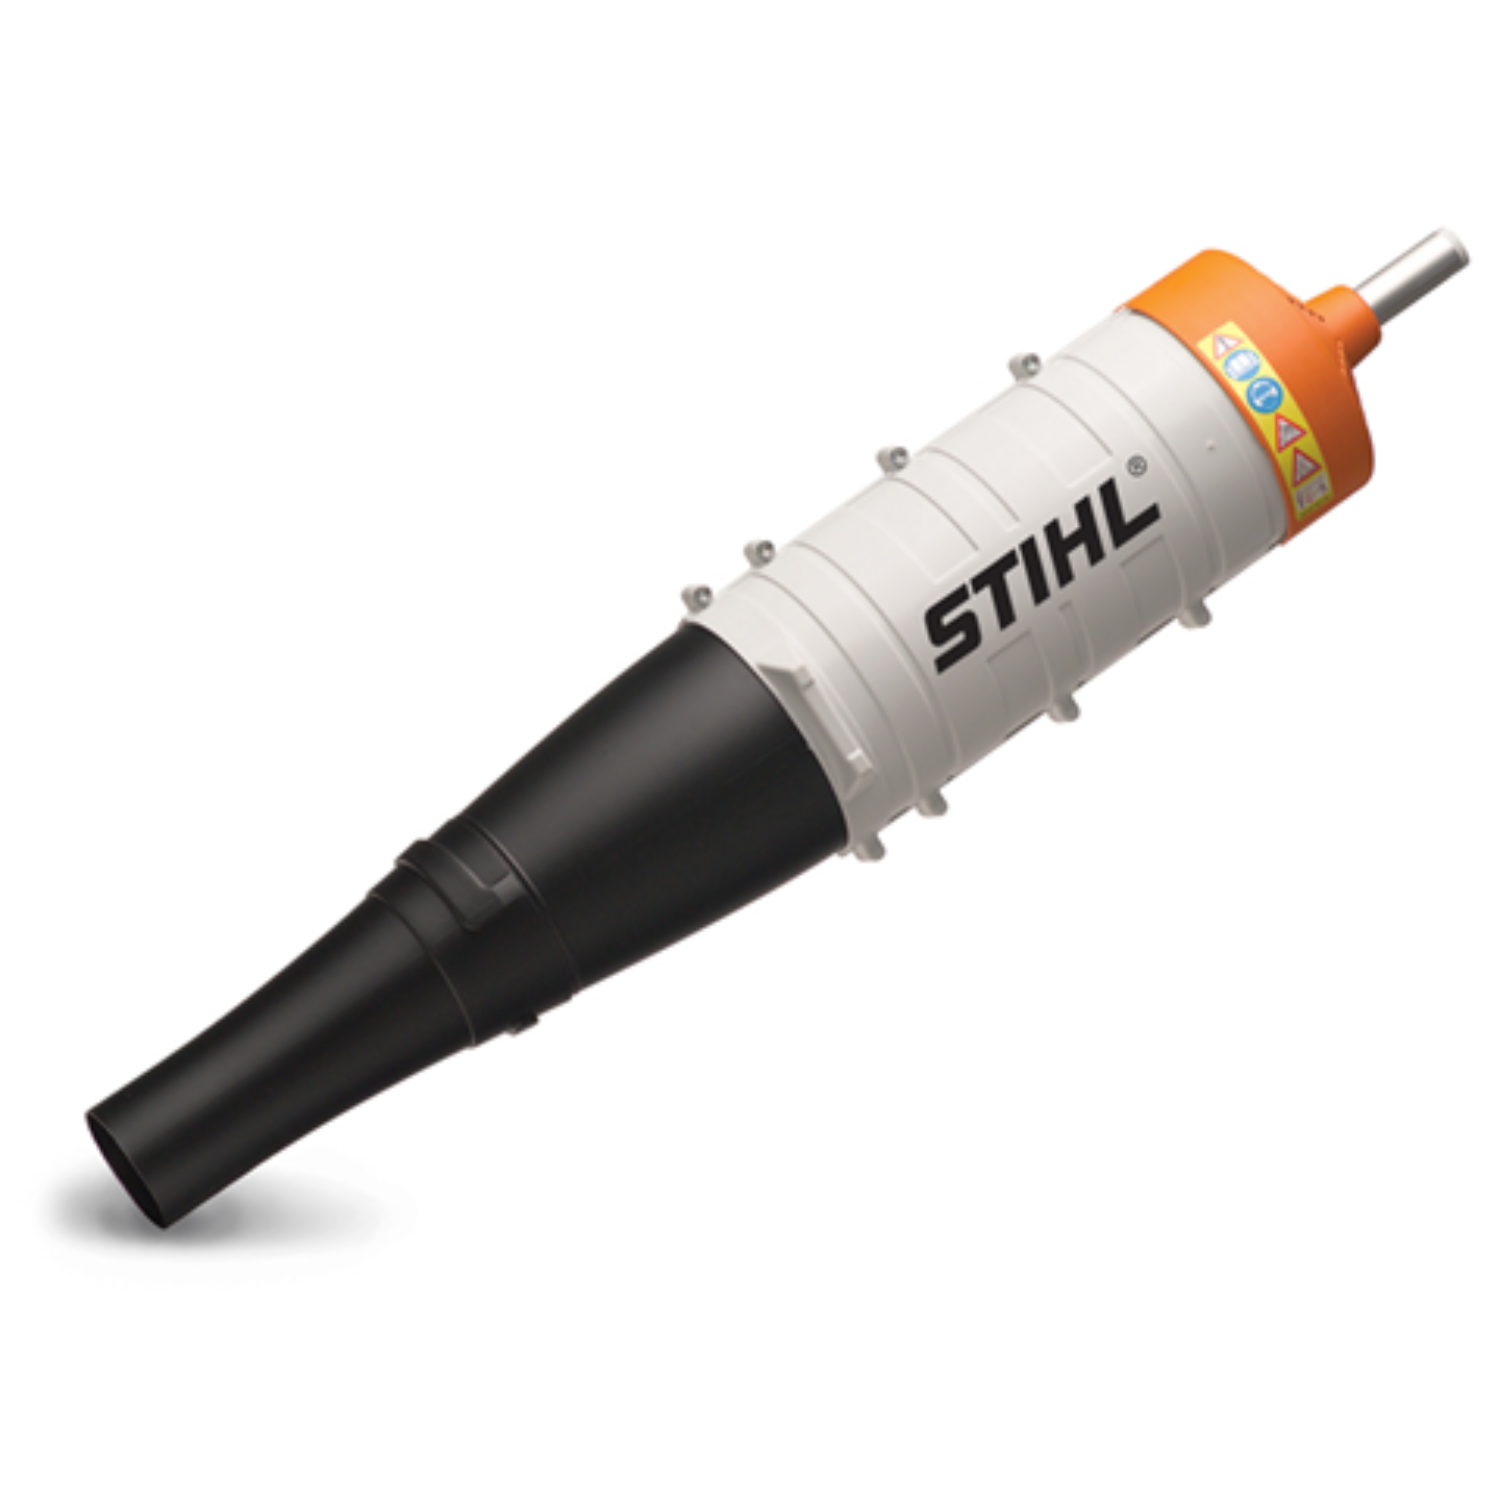 Stihl KM 131 R Multi-Tool Powerhead